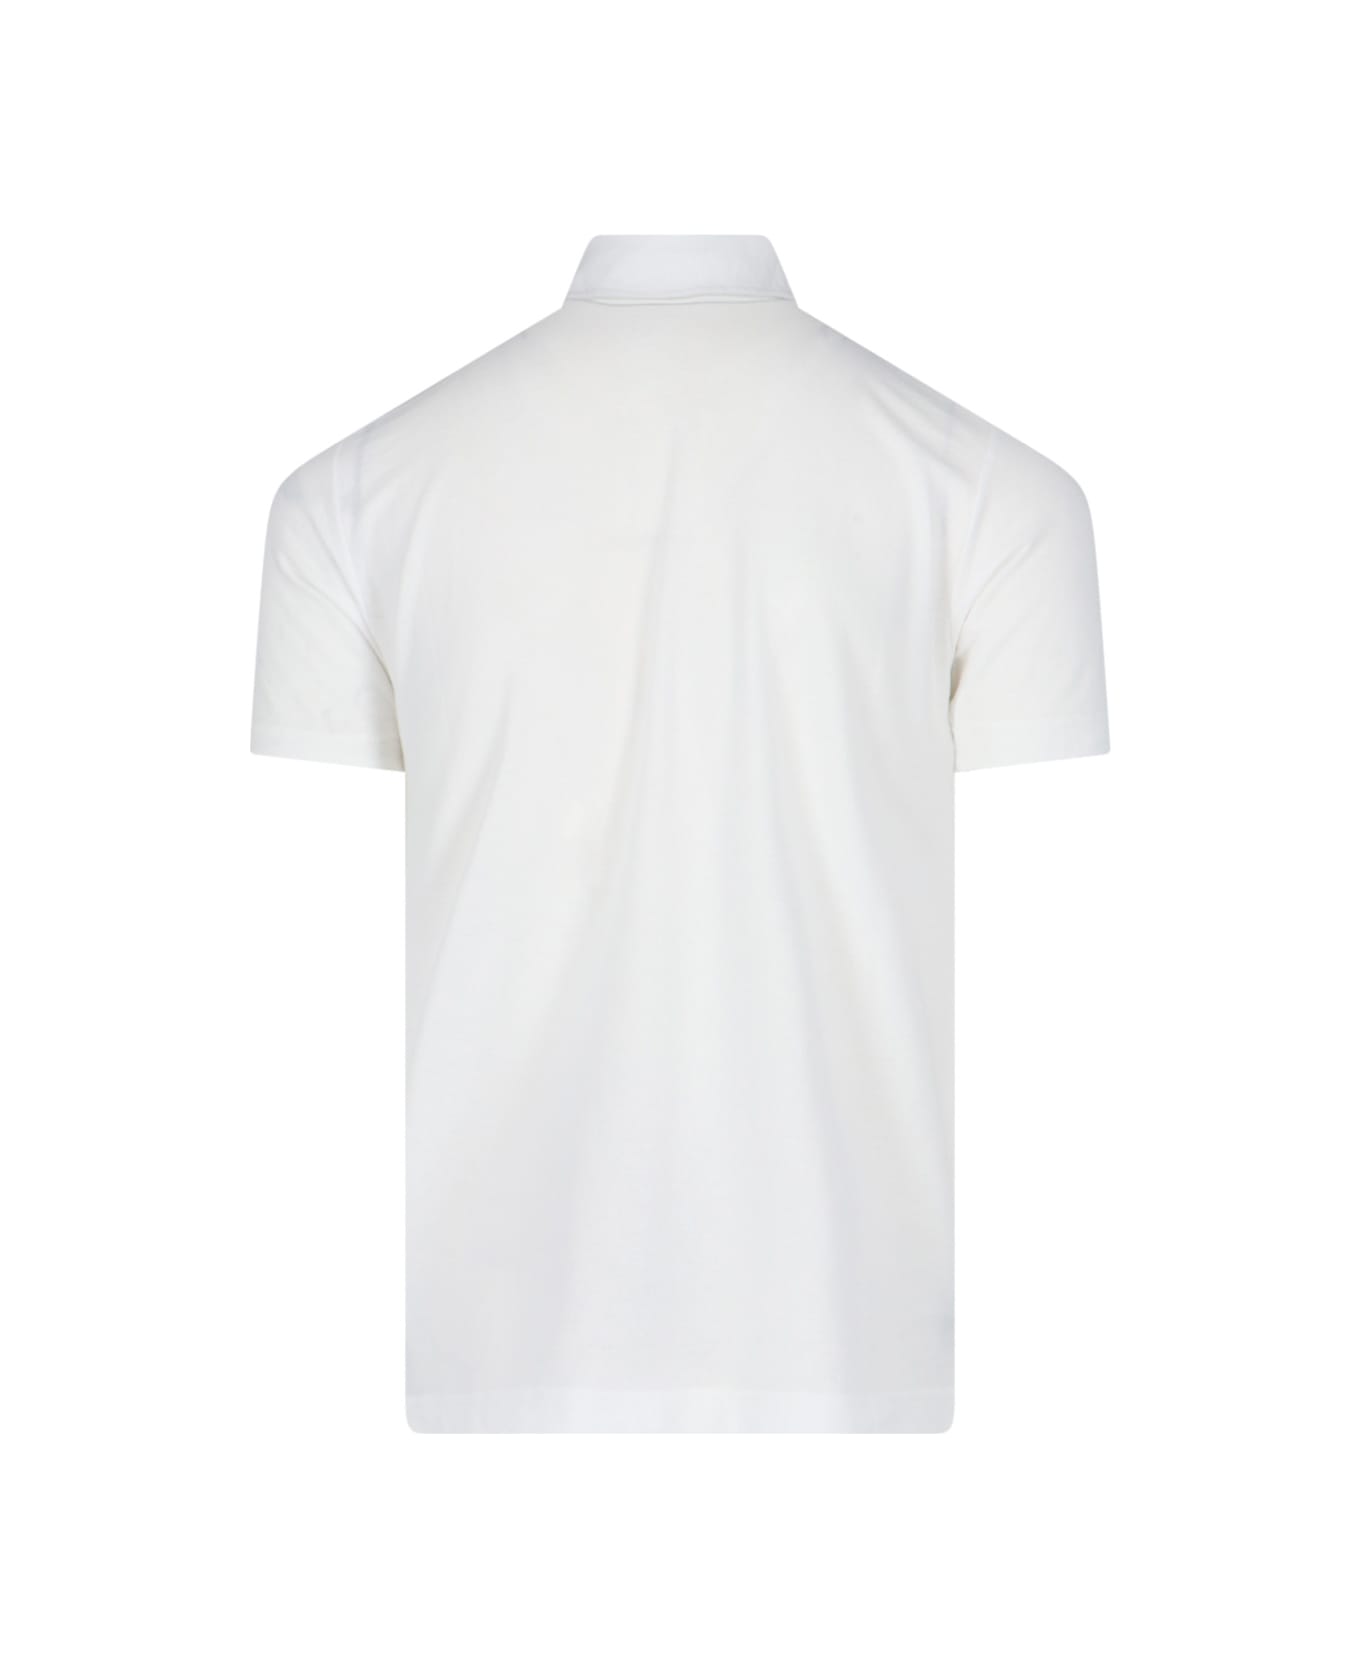 Zanone Basic Polo Shirt - Bianco